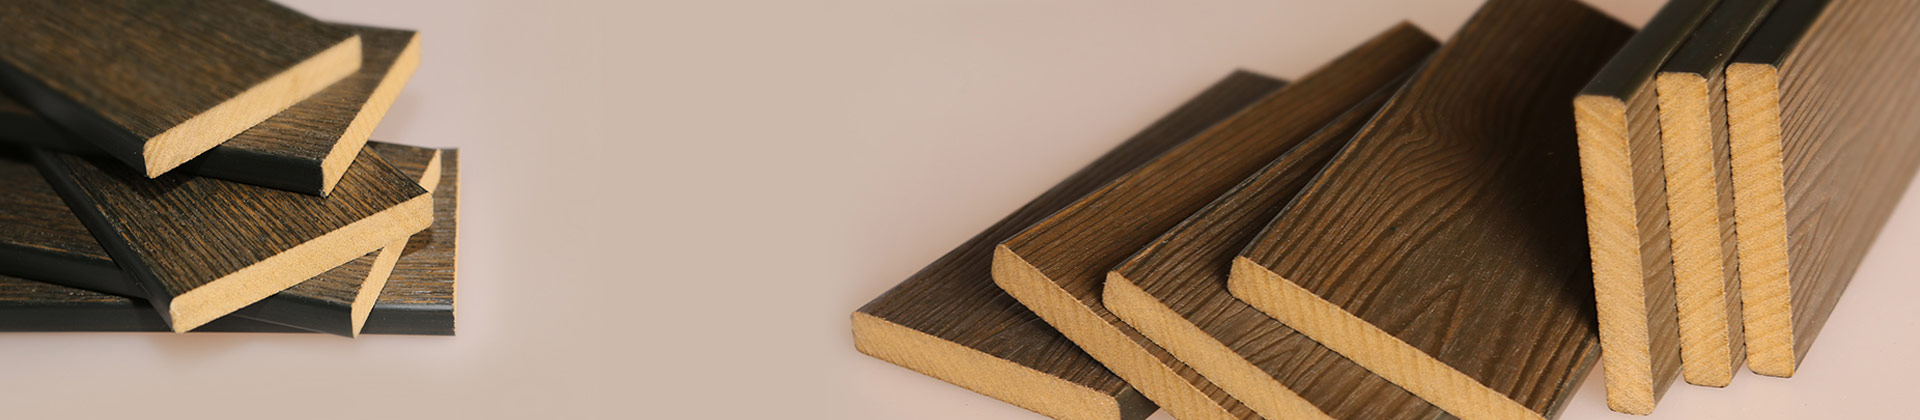 пластиковая древесина,полимерные плиты для мебели